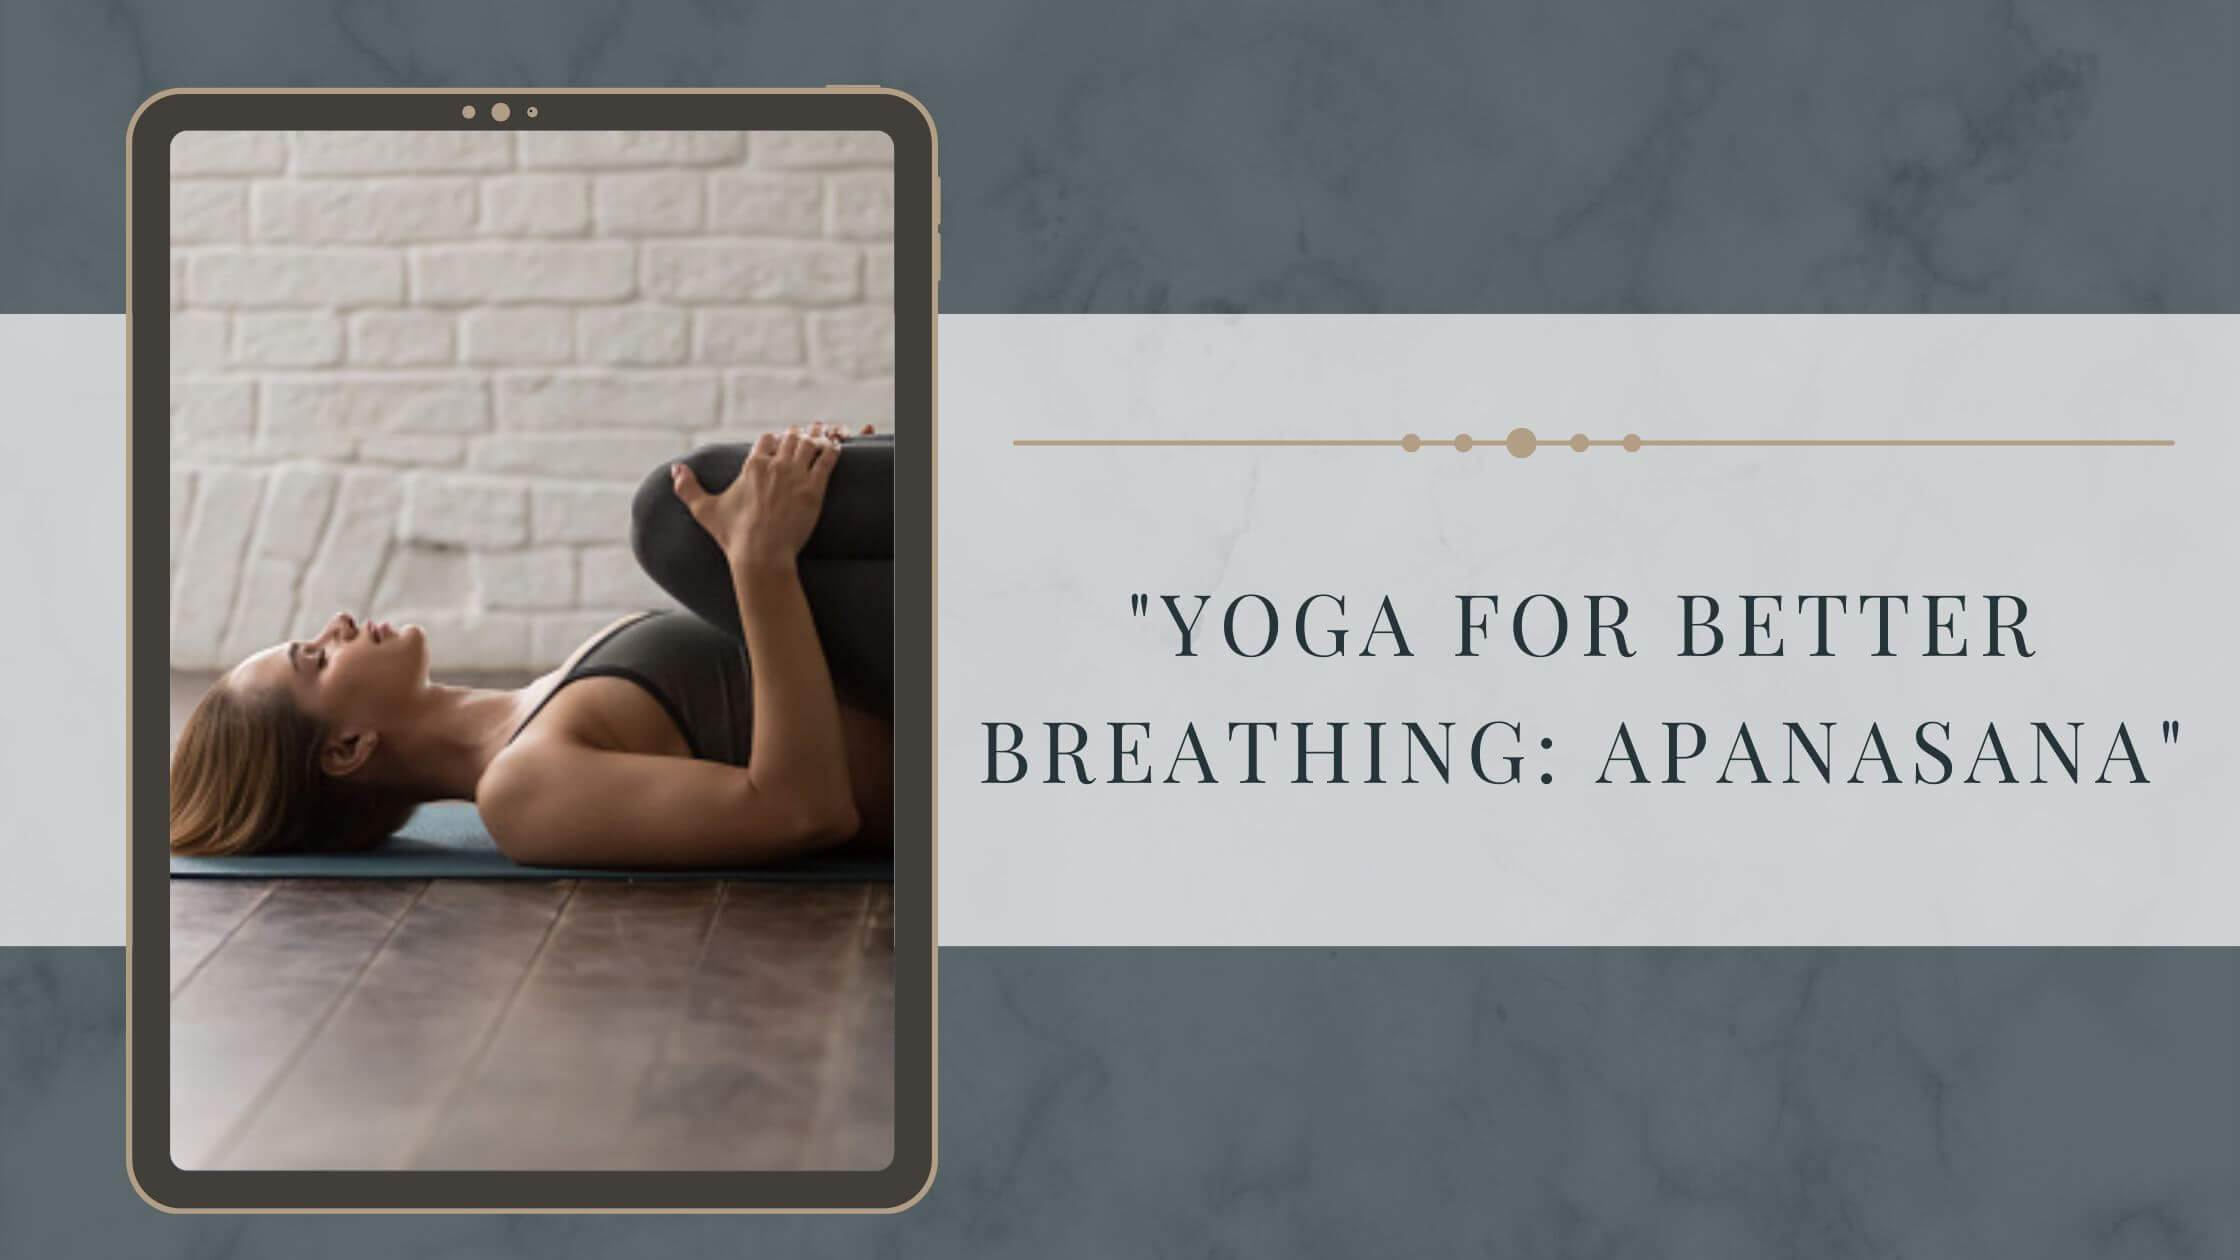 "Yoga for Better Breathing: Apanasana"